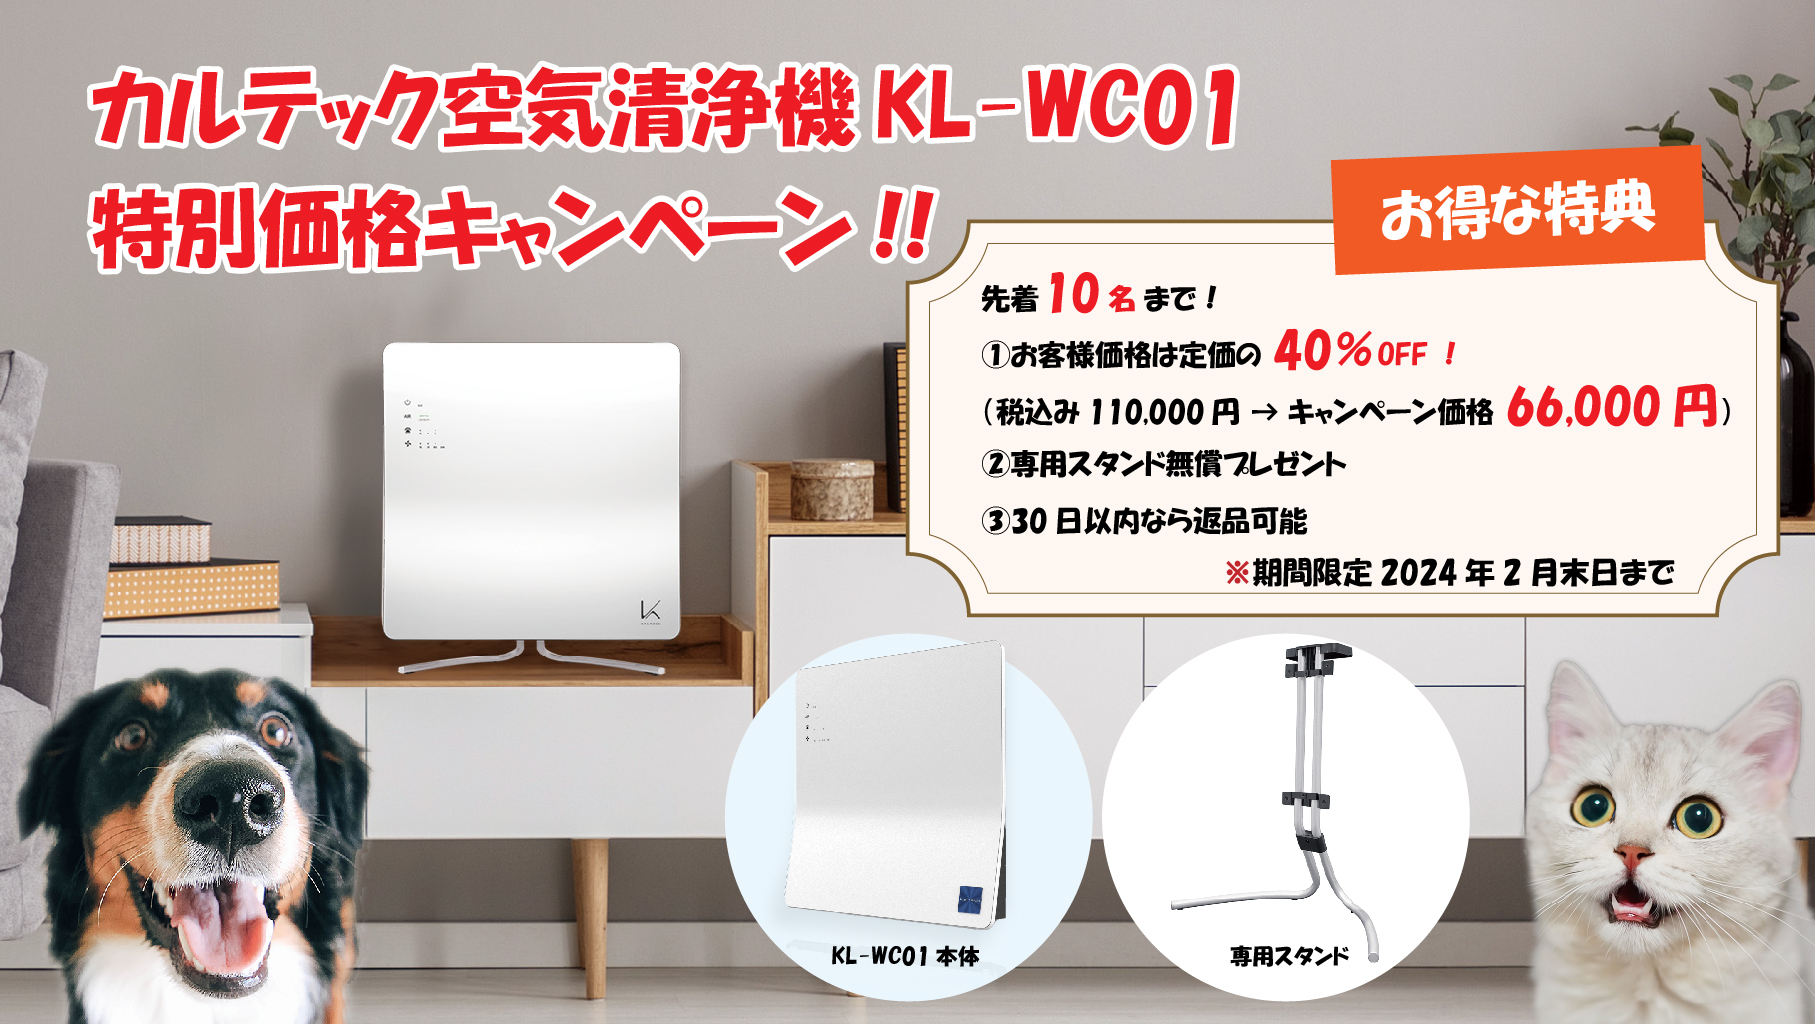 【カルテックKL-WC01除菌脱臭機 特別キャンペーン】